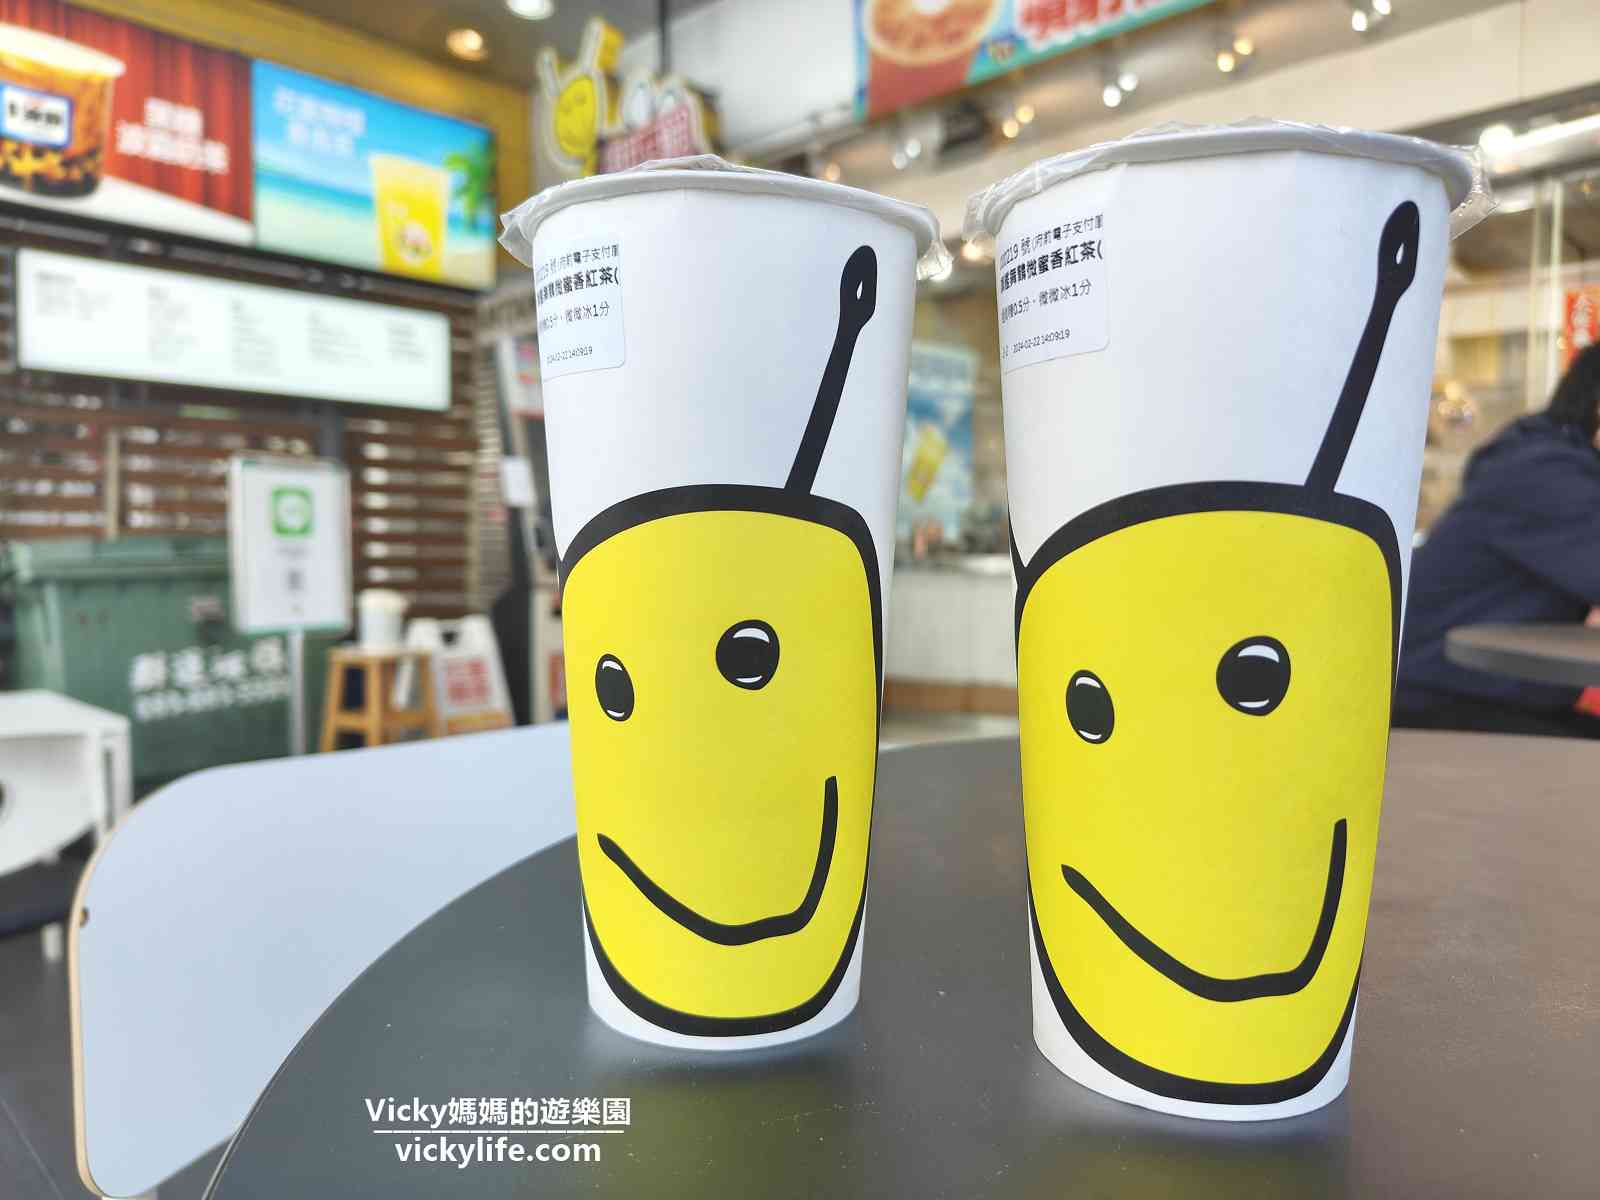 台南飲料︱甜又鮮飲料 府前店：想喝什麼飲料跟飲料機討論就對了，還可以線上點飲料喔！附飲料單和售價